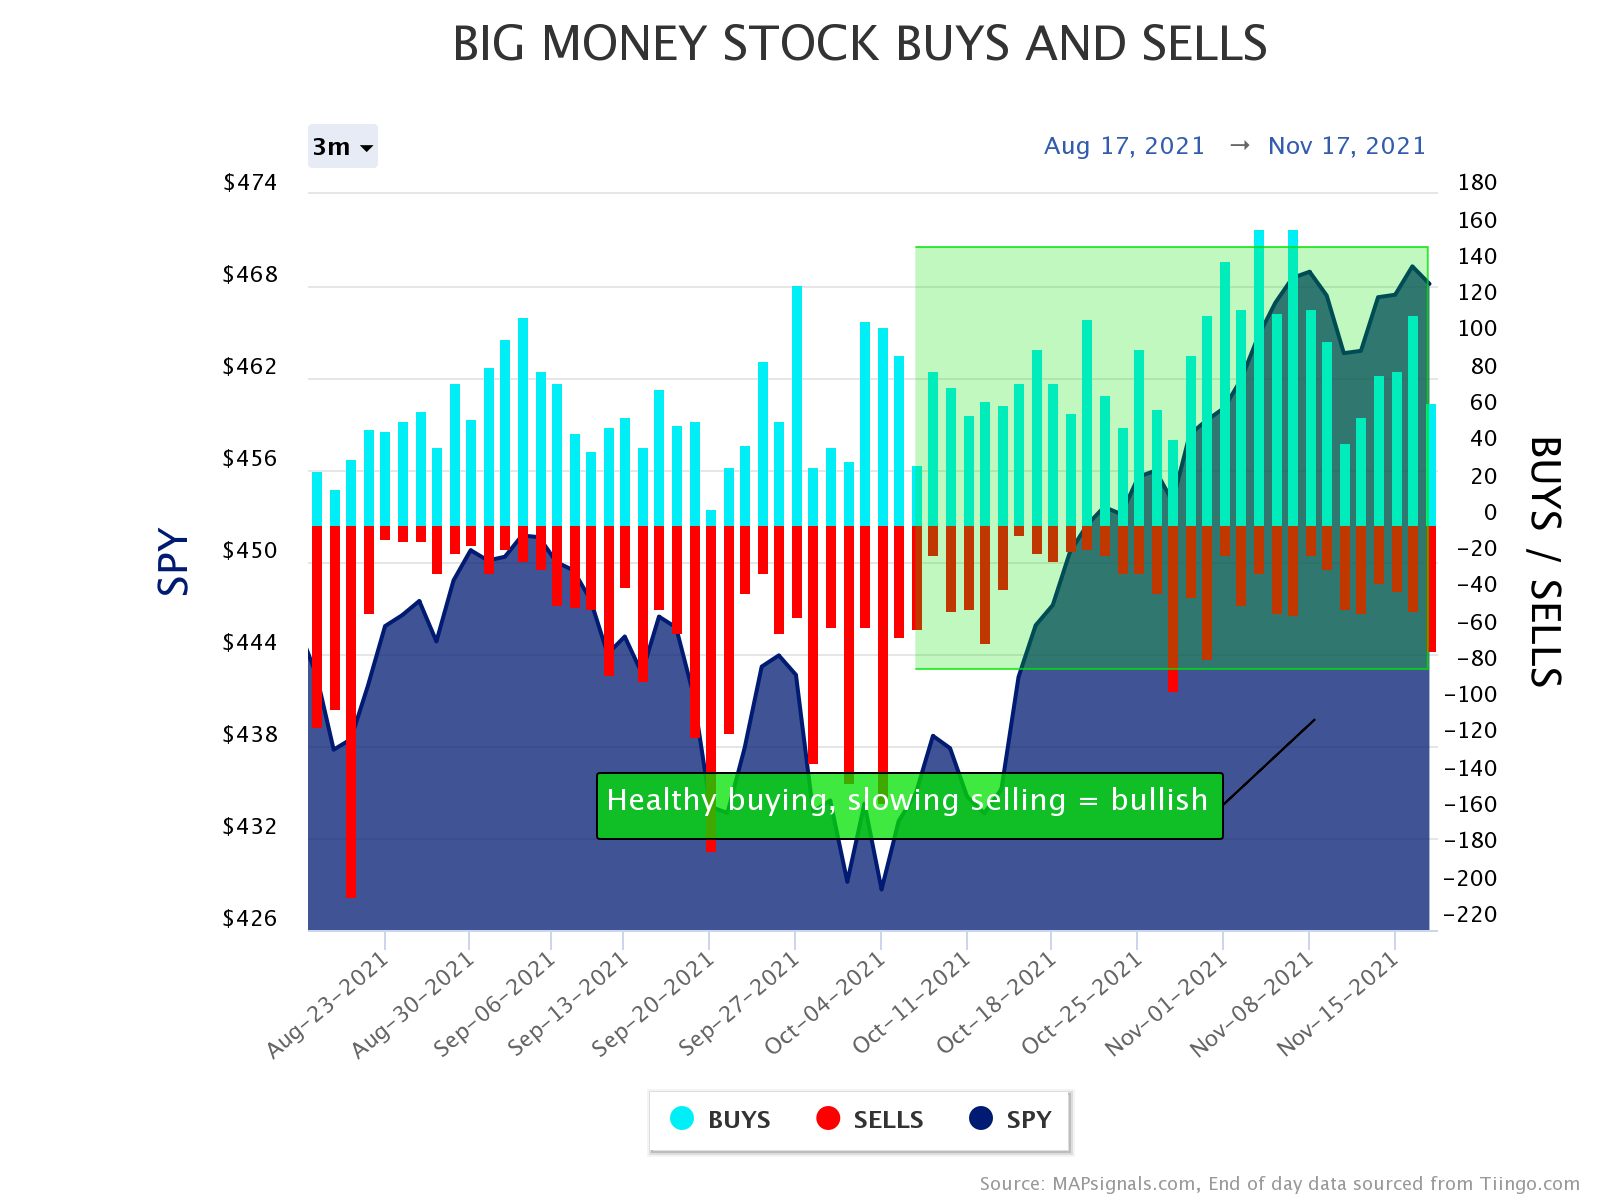 Big Money rushing into stocks